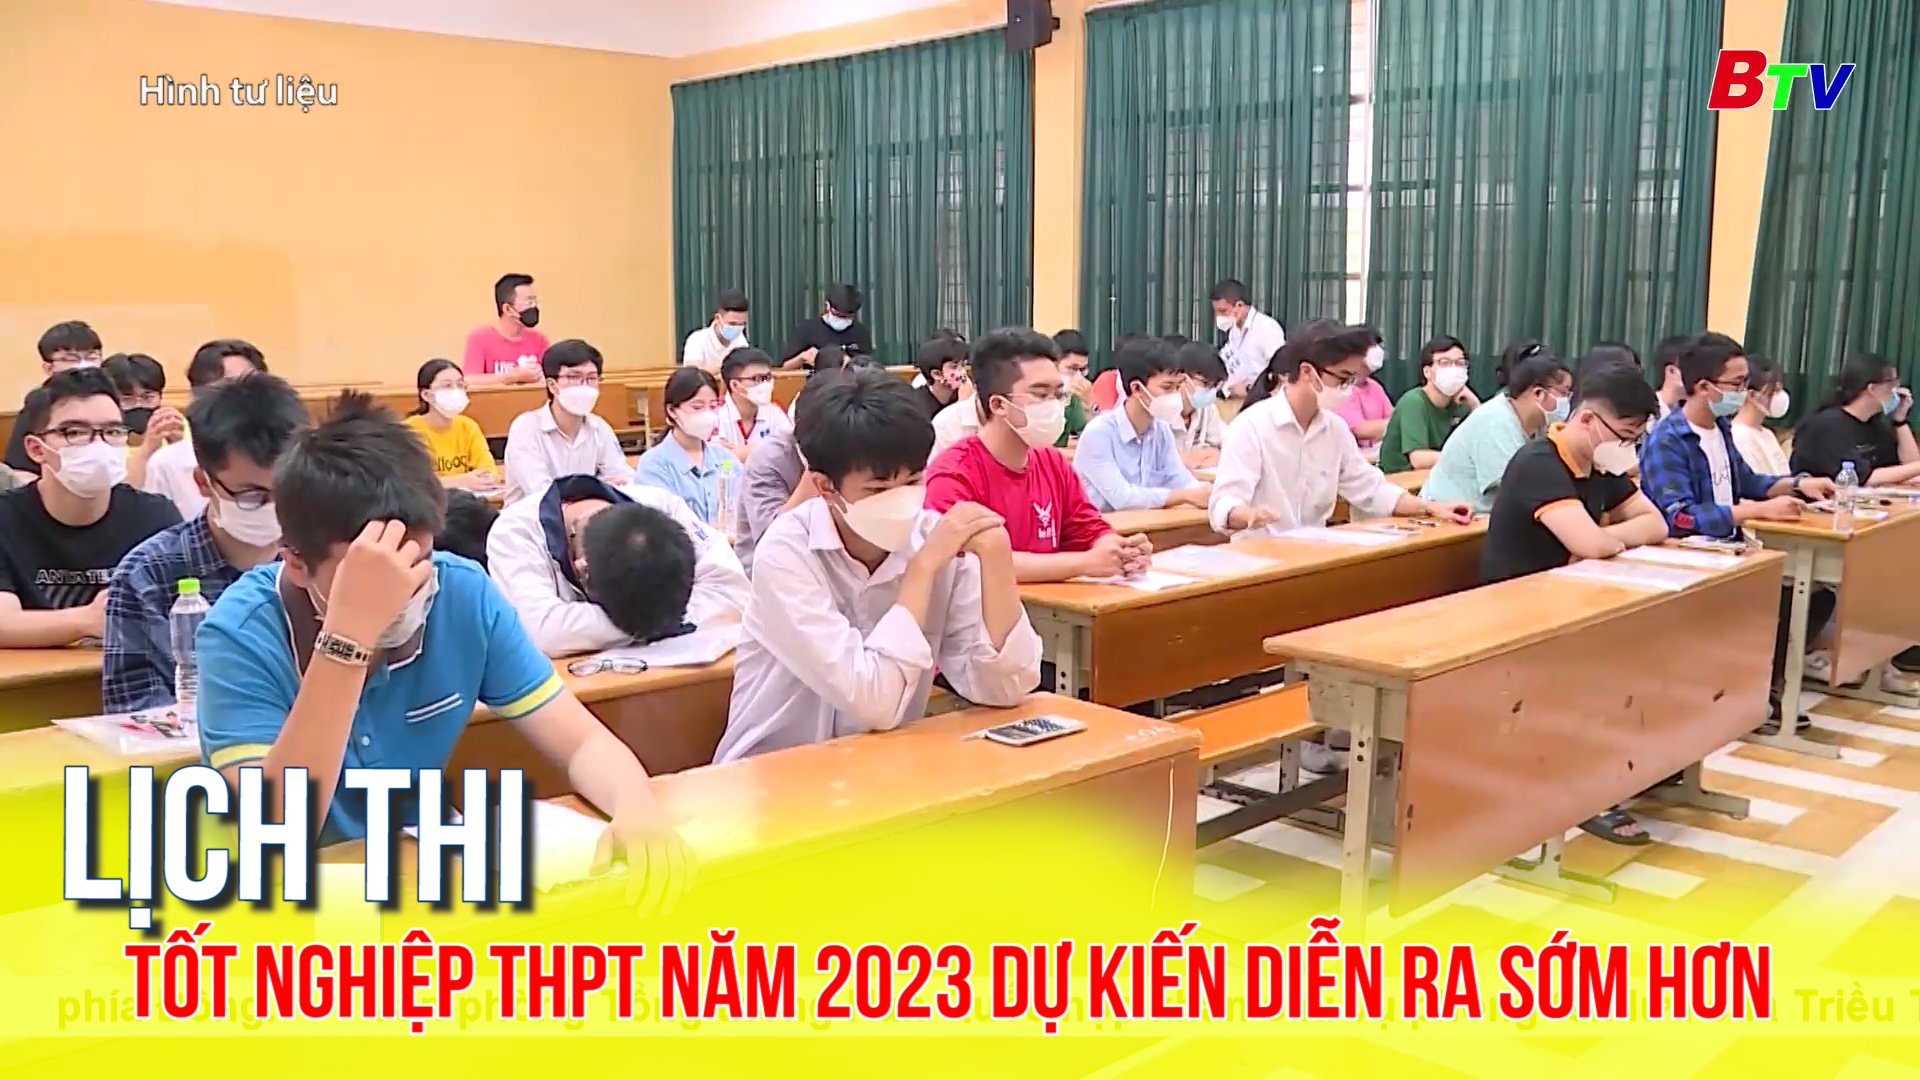 Lịch thi tốt nghiệp THPT năm 2023 dự kiến diễn ra sớm hơn